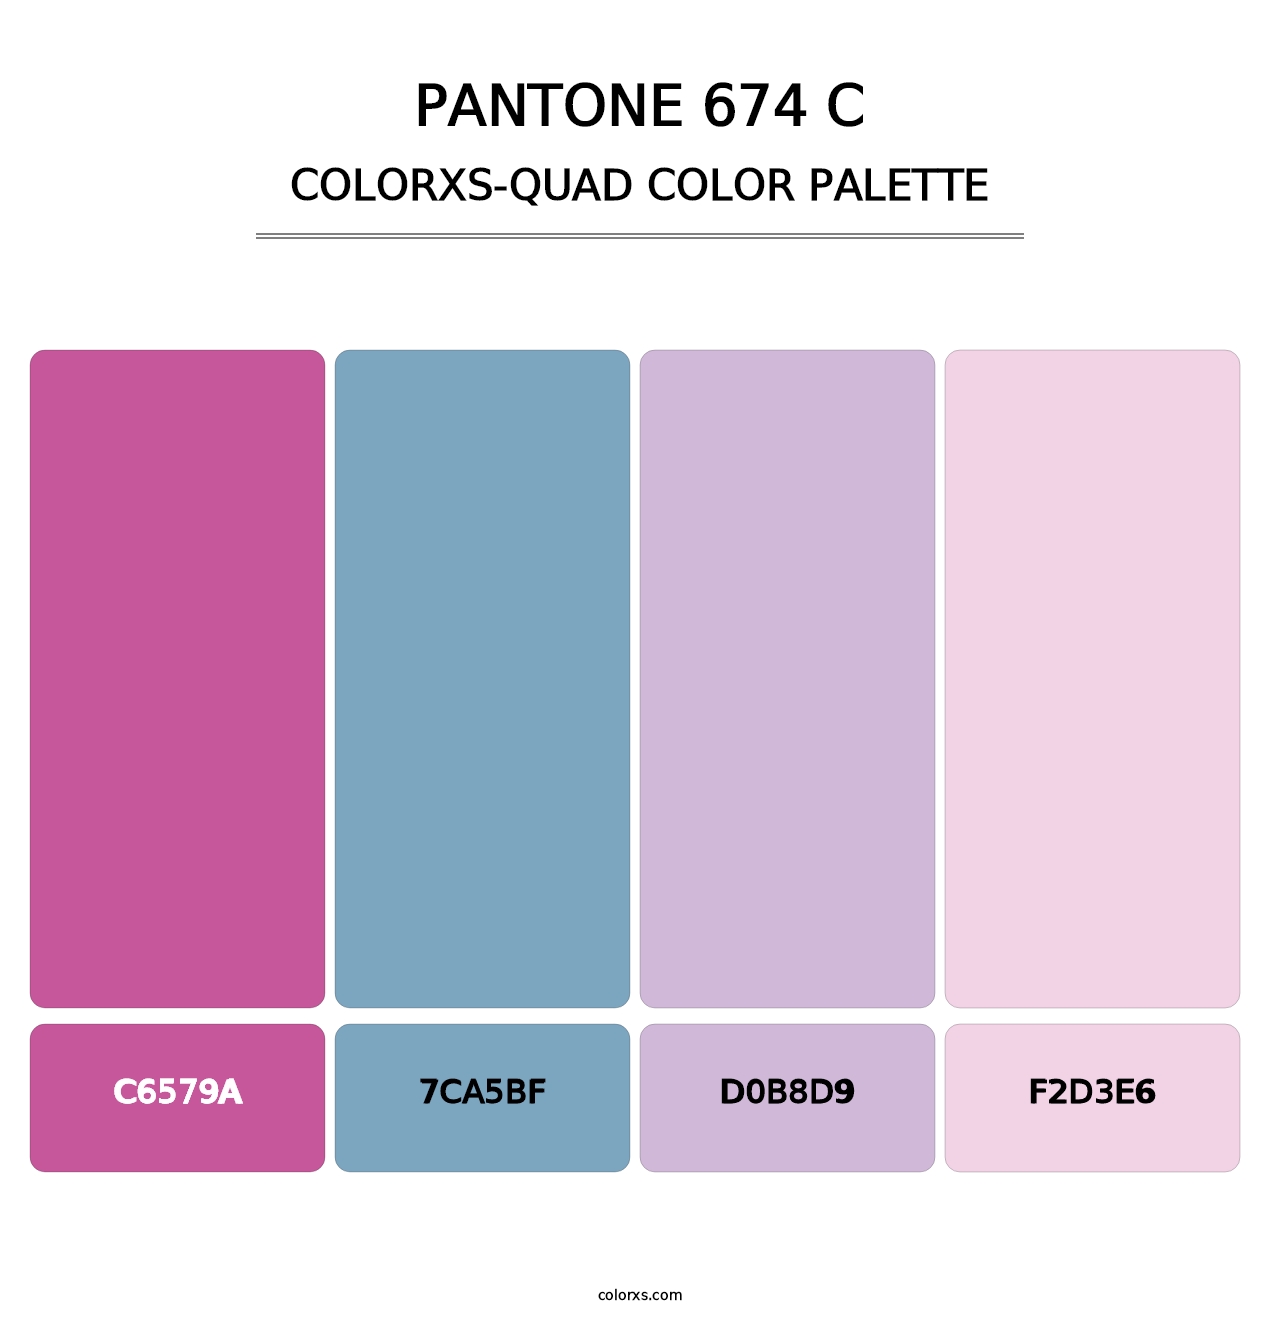 PANTONE 674 C - Colorxs Quad Palette